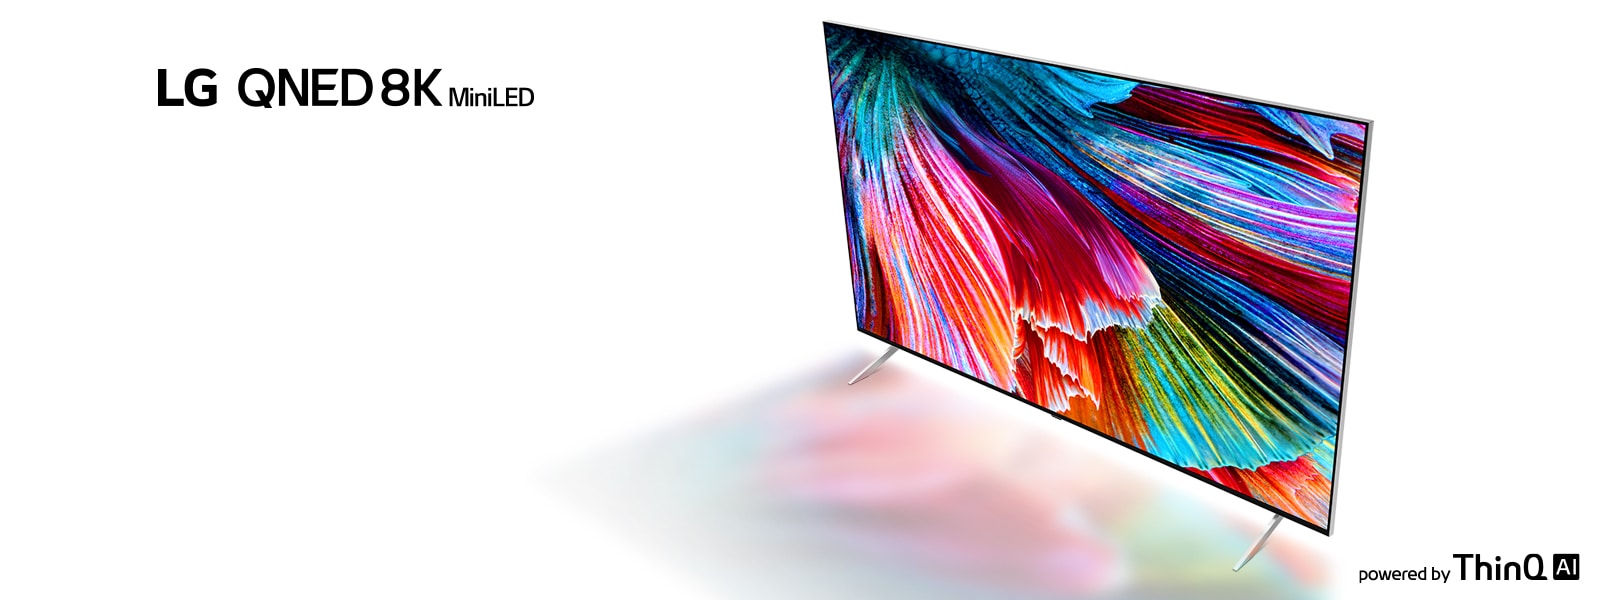 Attēlā redzams LG QNED 8K Mini LED televizors uz balta fona, un ekrānā redzamās krāsas atspoguļojas uz virsmas zem tā.